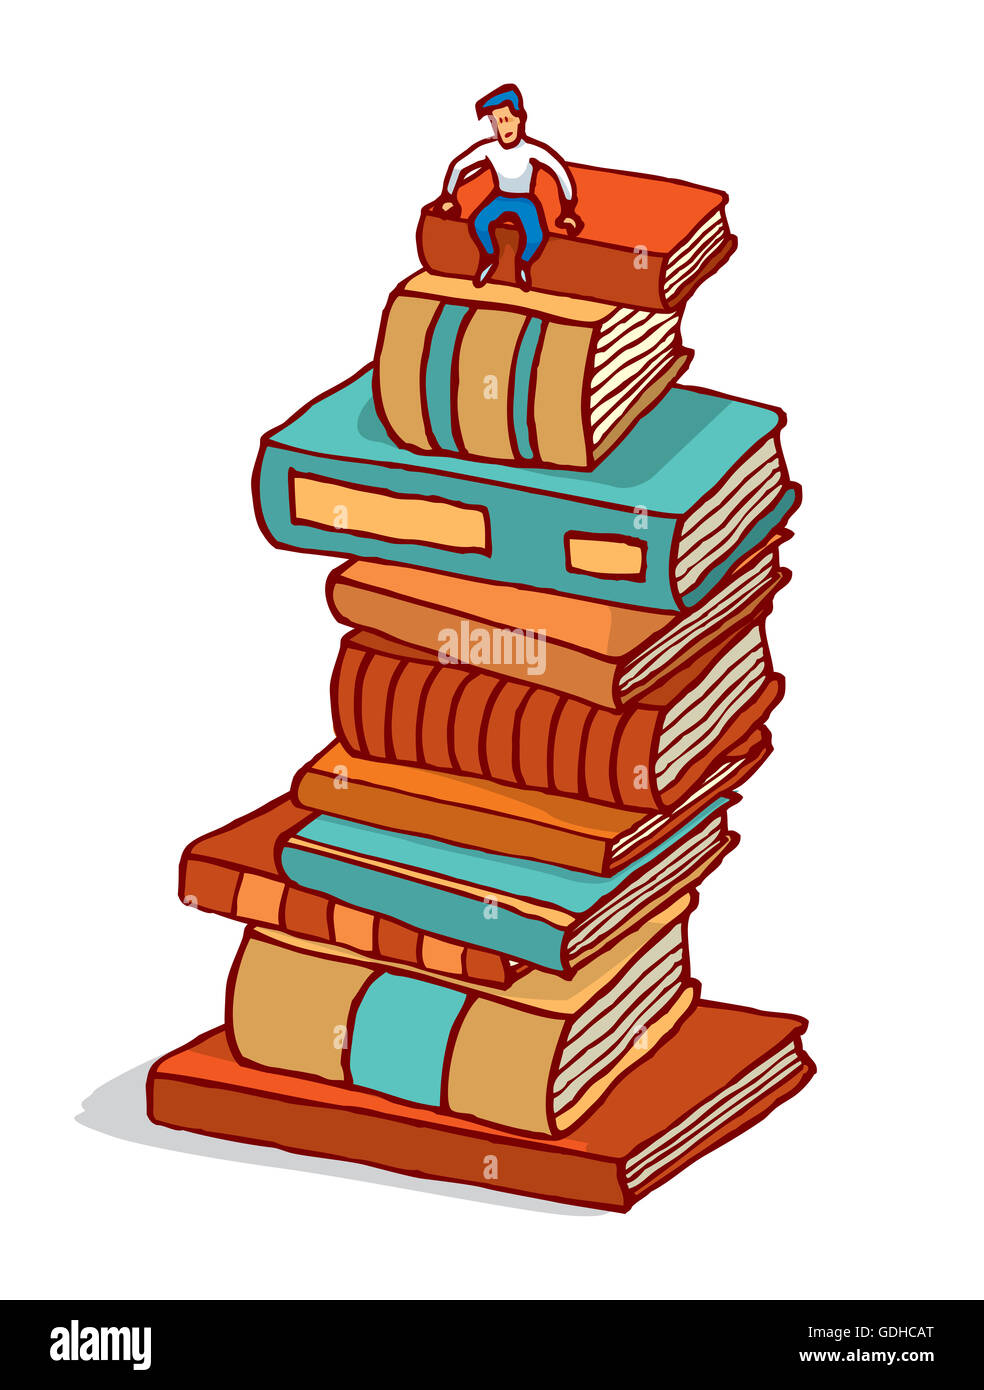 Cartoon illustration de petit homme assis dans la pile de livres de l'éducation édifice Banque D'Images